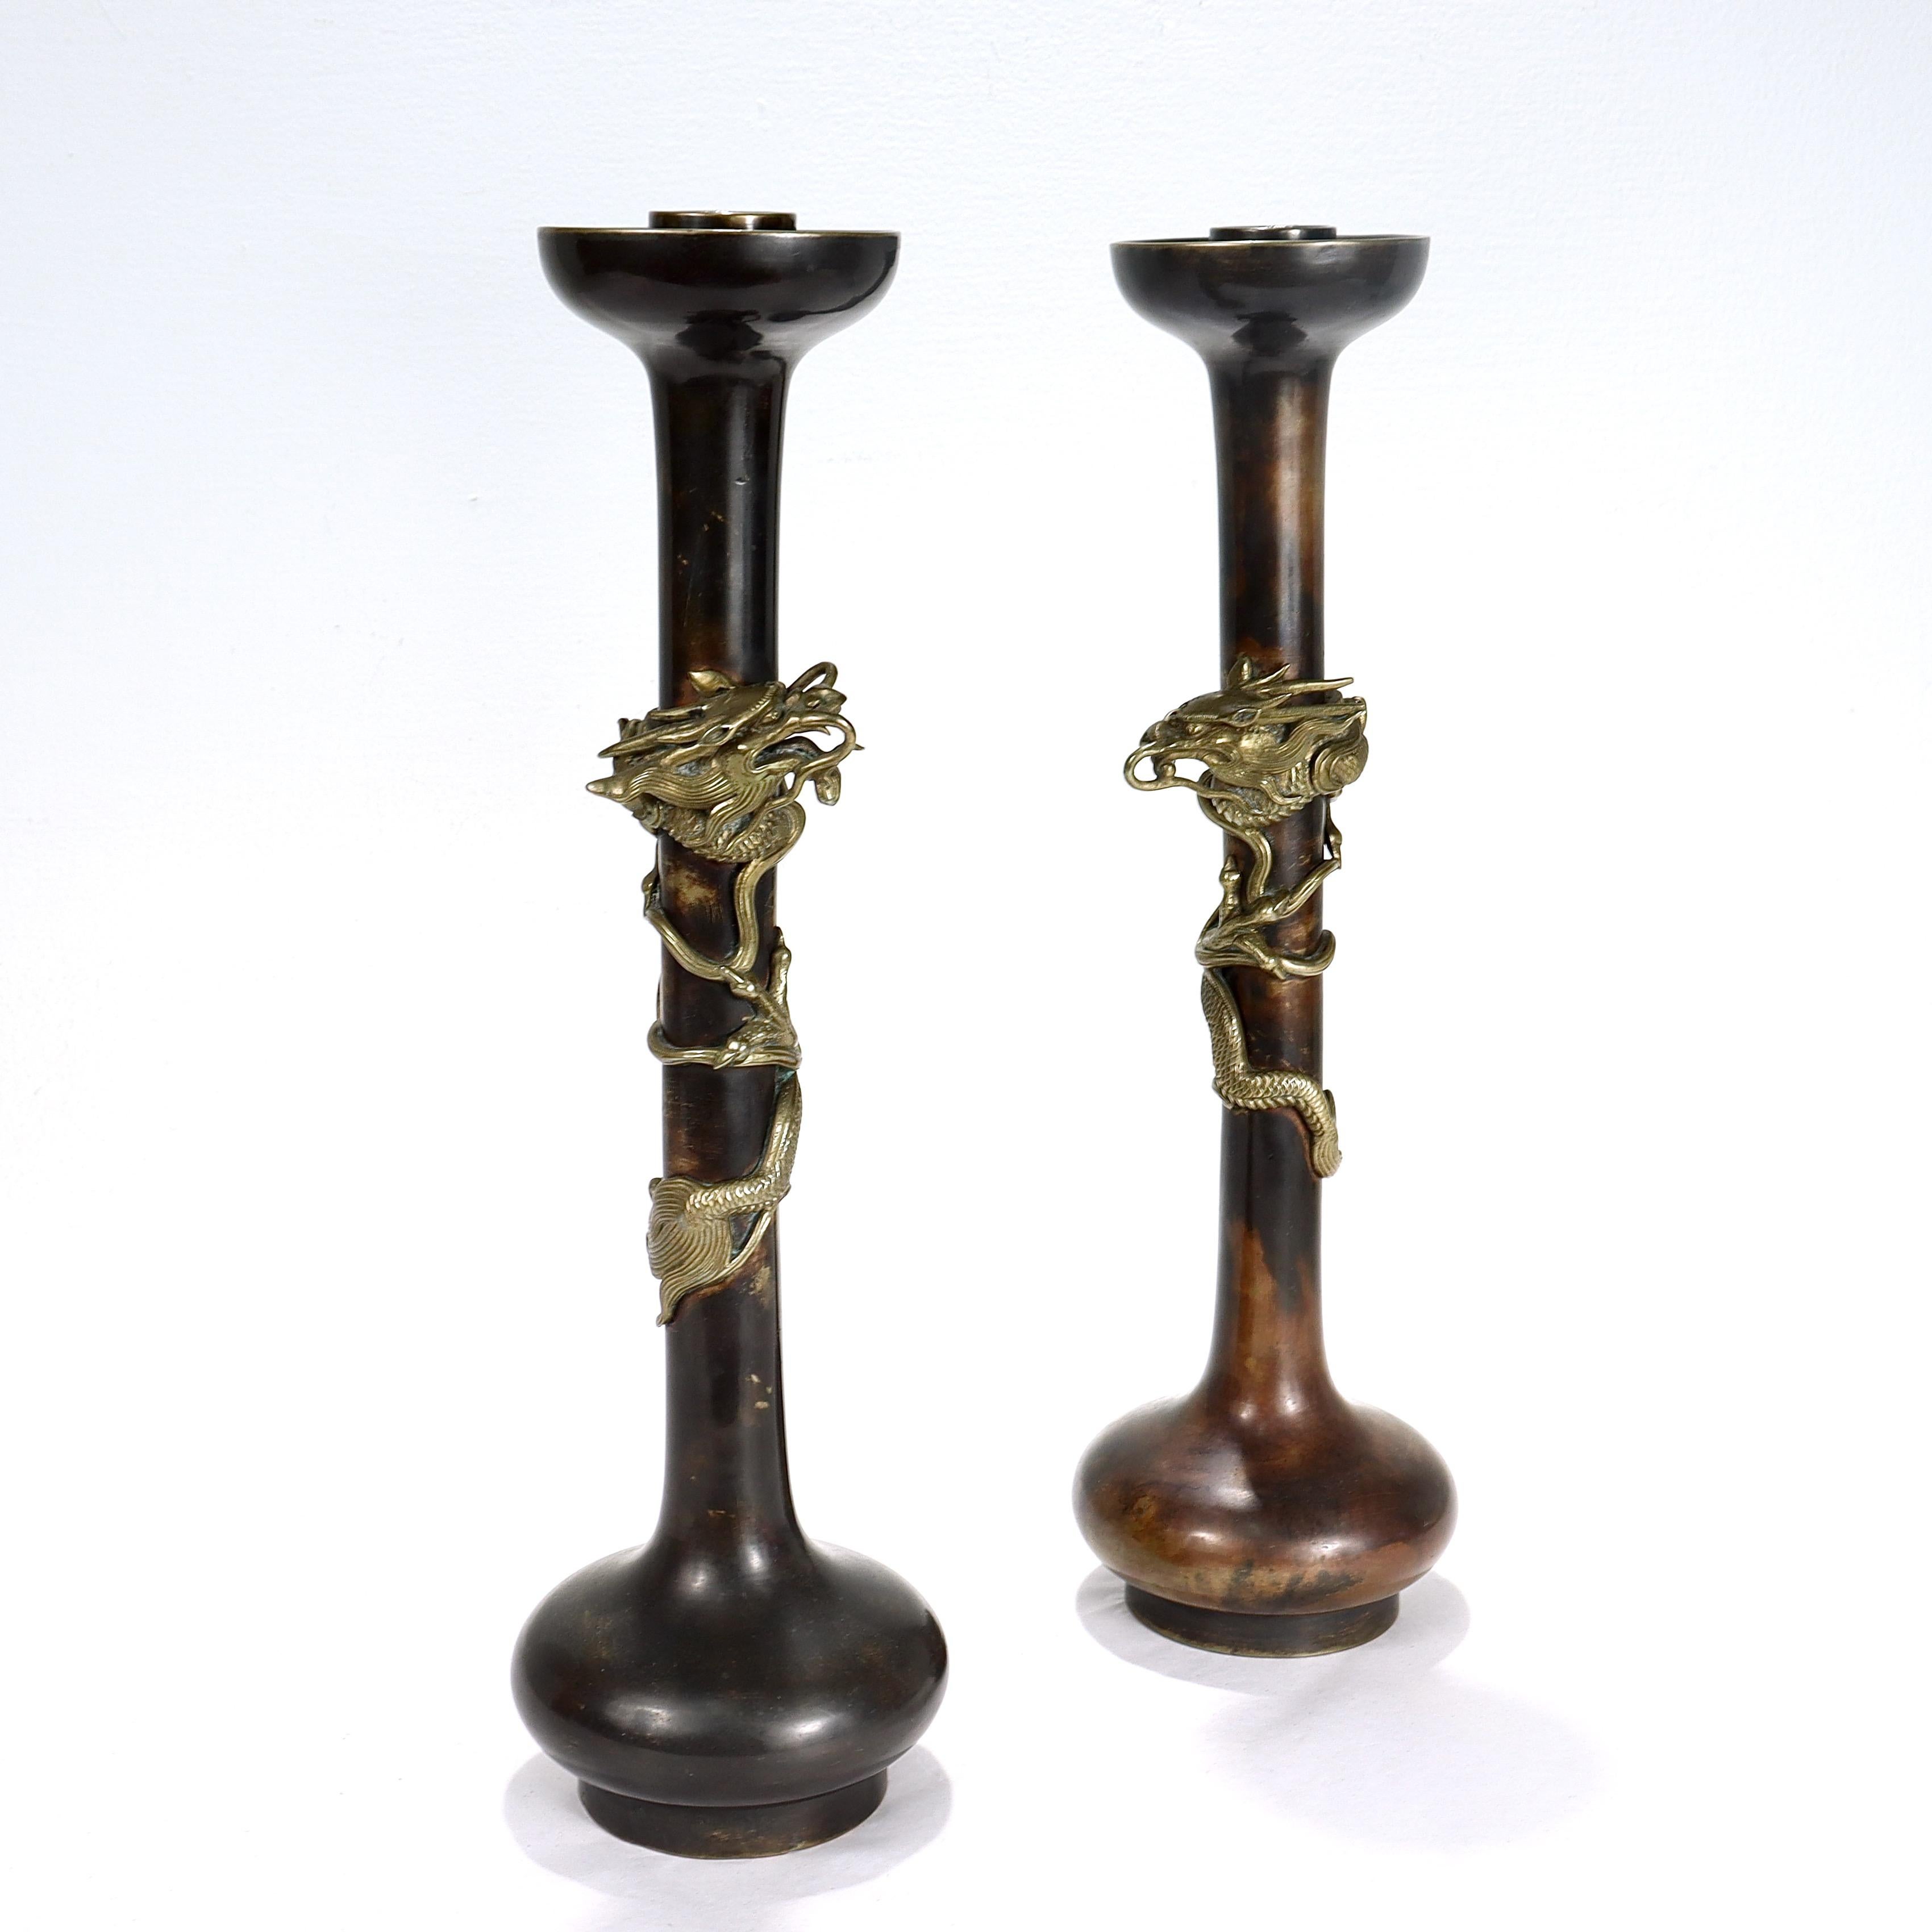 Ein feines Paar antiker japanischer Bronze-Kerzenständer.

Jede ist mit einem applizierten, aufgerollten Drachen auf dem länglichen, dünnen Hals unter einer umgedrehten Lippe und einem Kerzenbecher und über einem unterdrückten Kugelfuß und Sockel